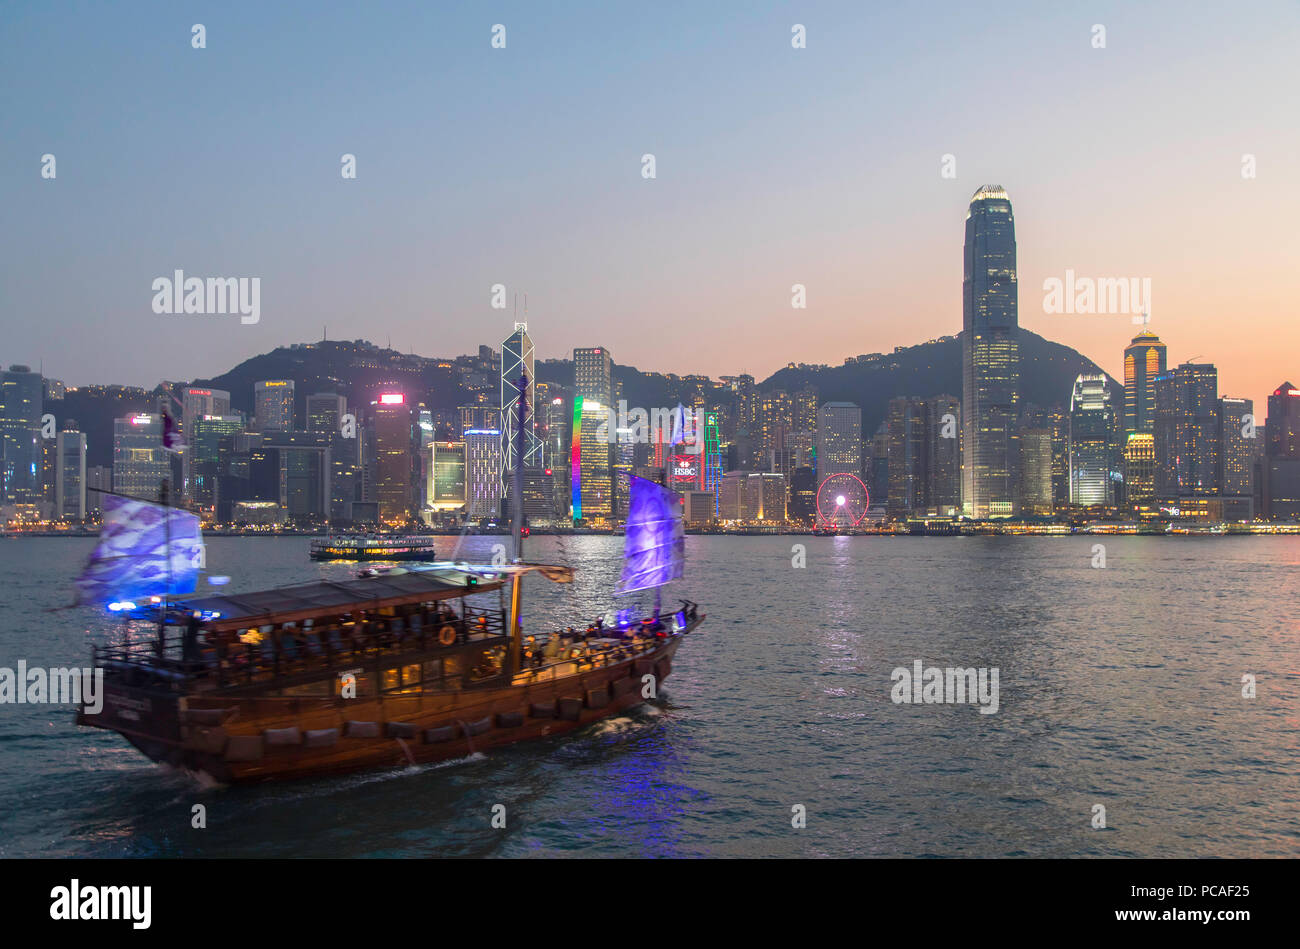 Junk boat in Victoria Harbour at dusk, Hong Kong Island, Hong Kong, China, Asia Stock Photo